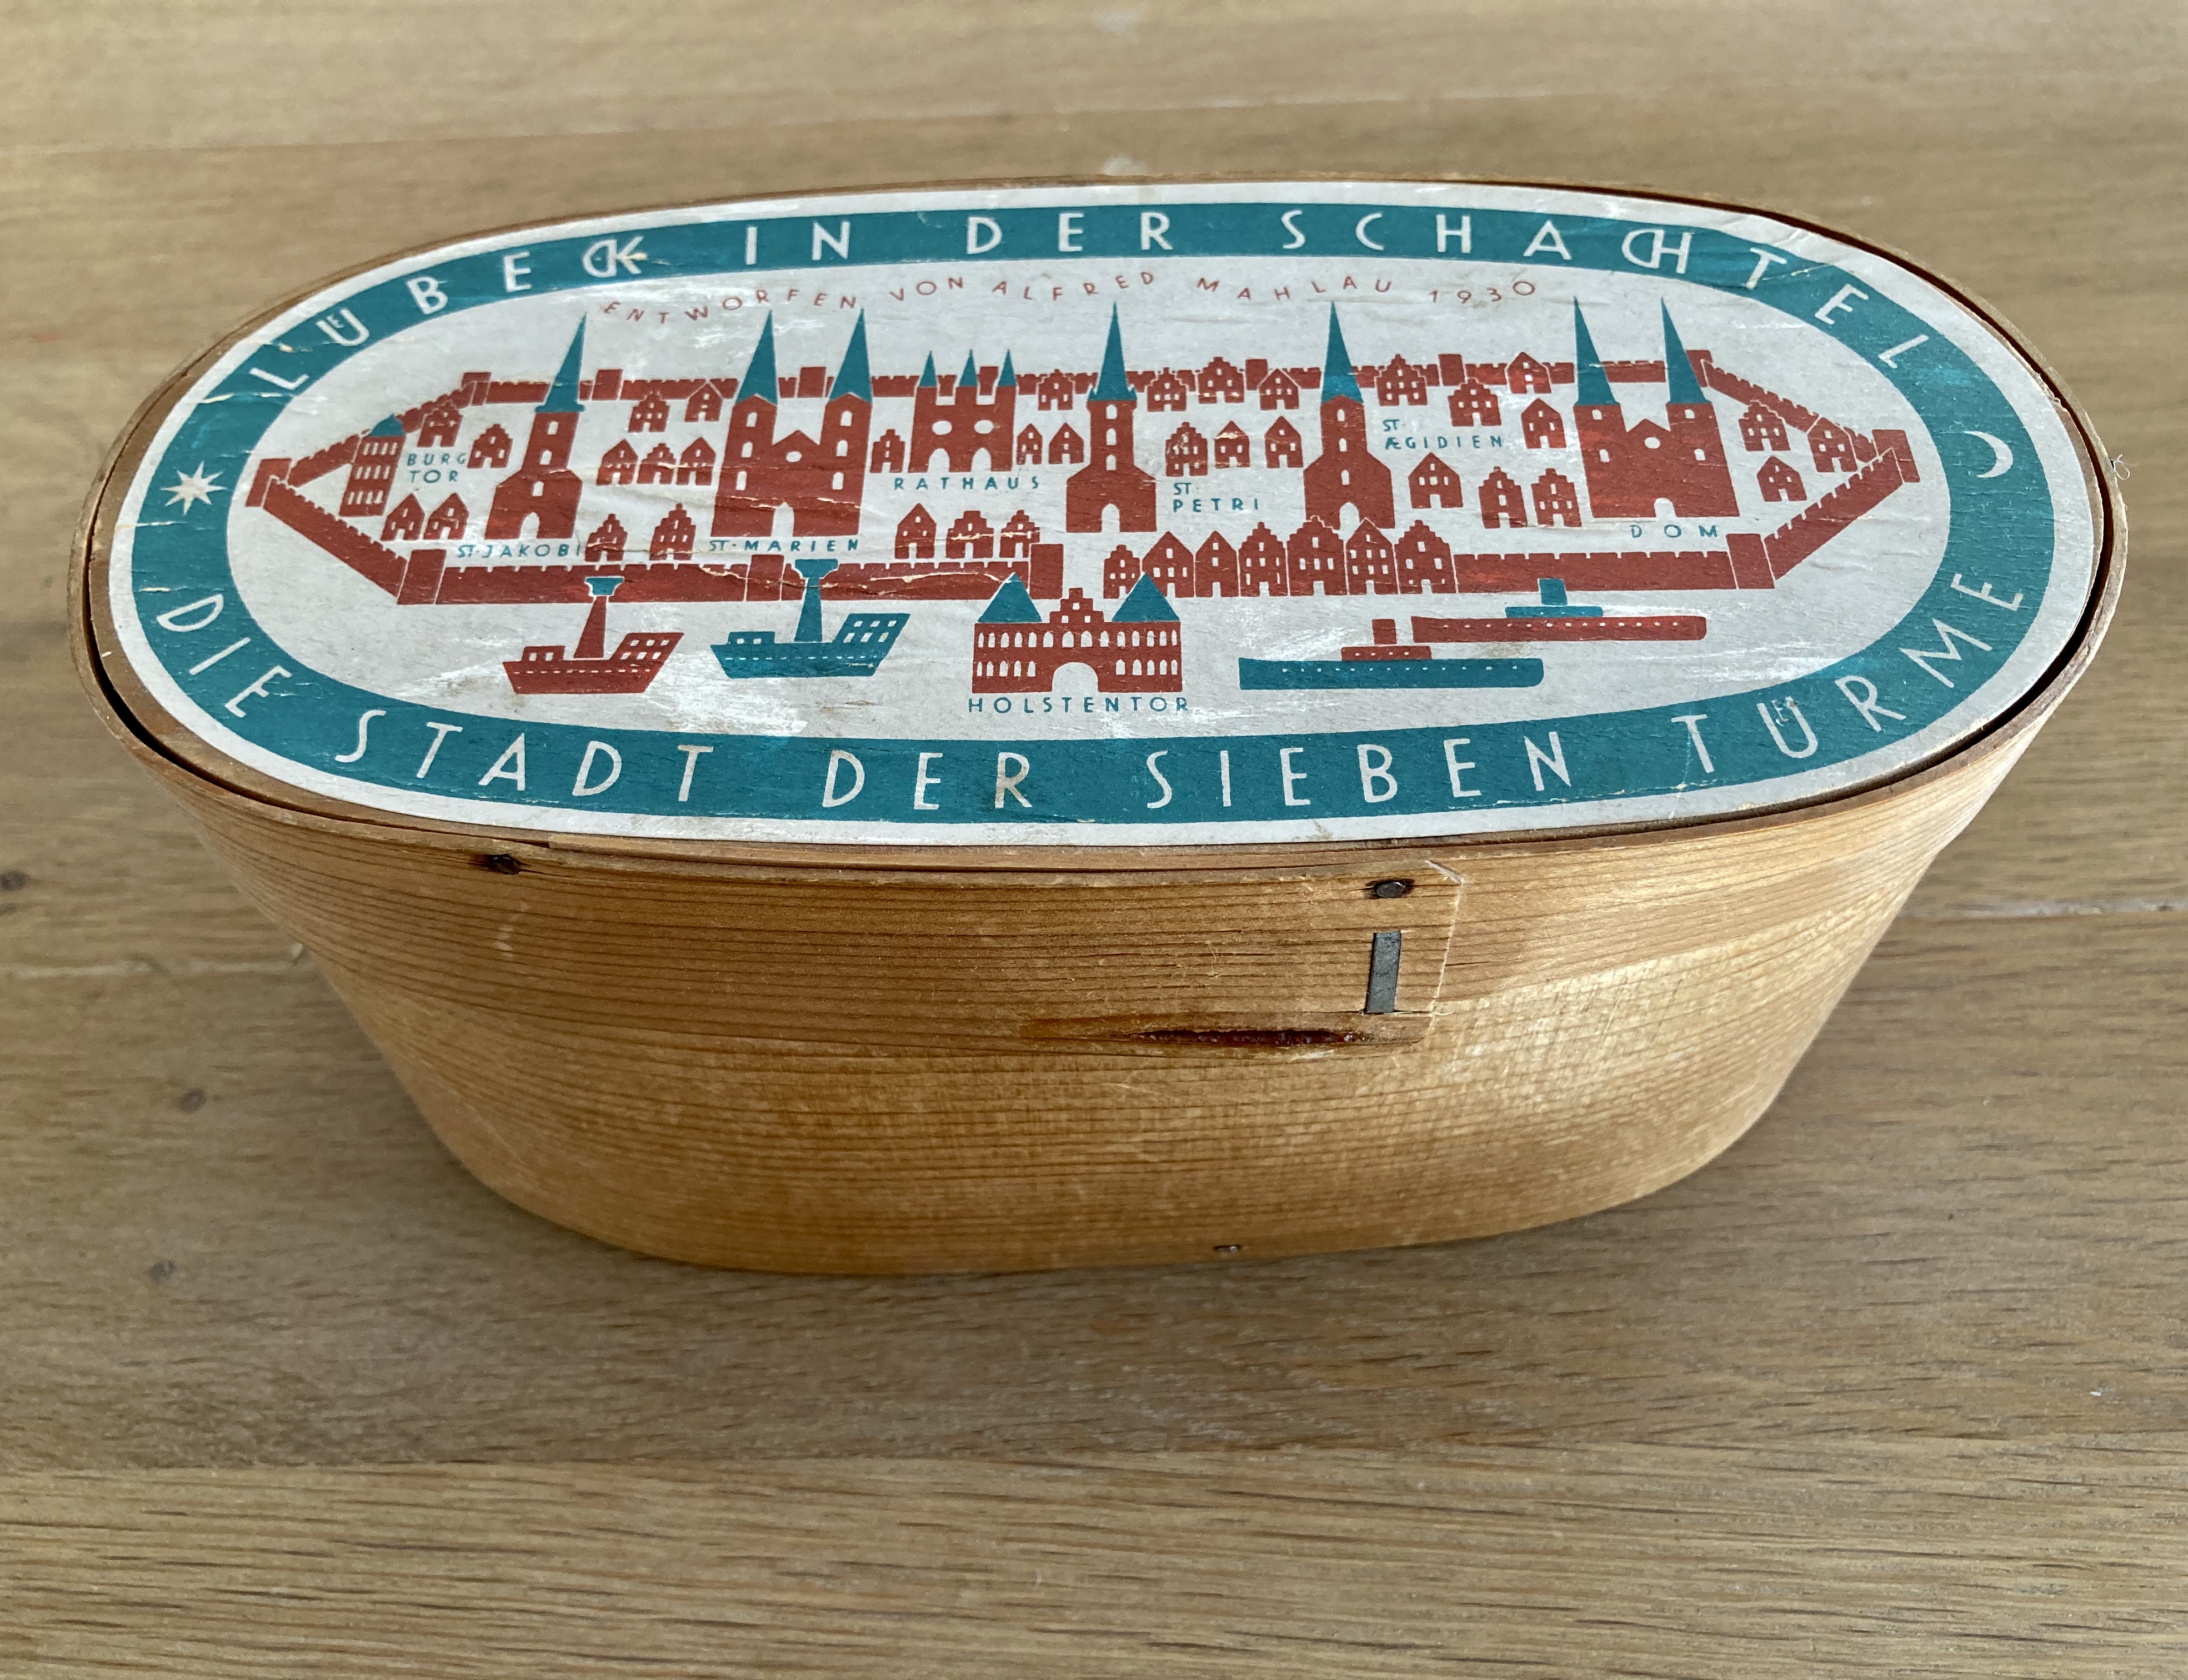 Lübeck in der Schachtel von Alfred Mahlau